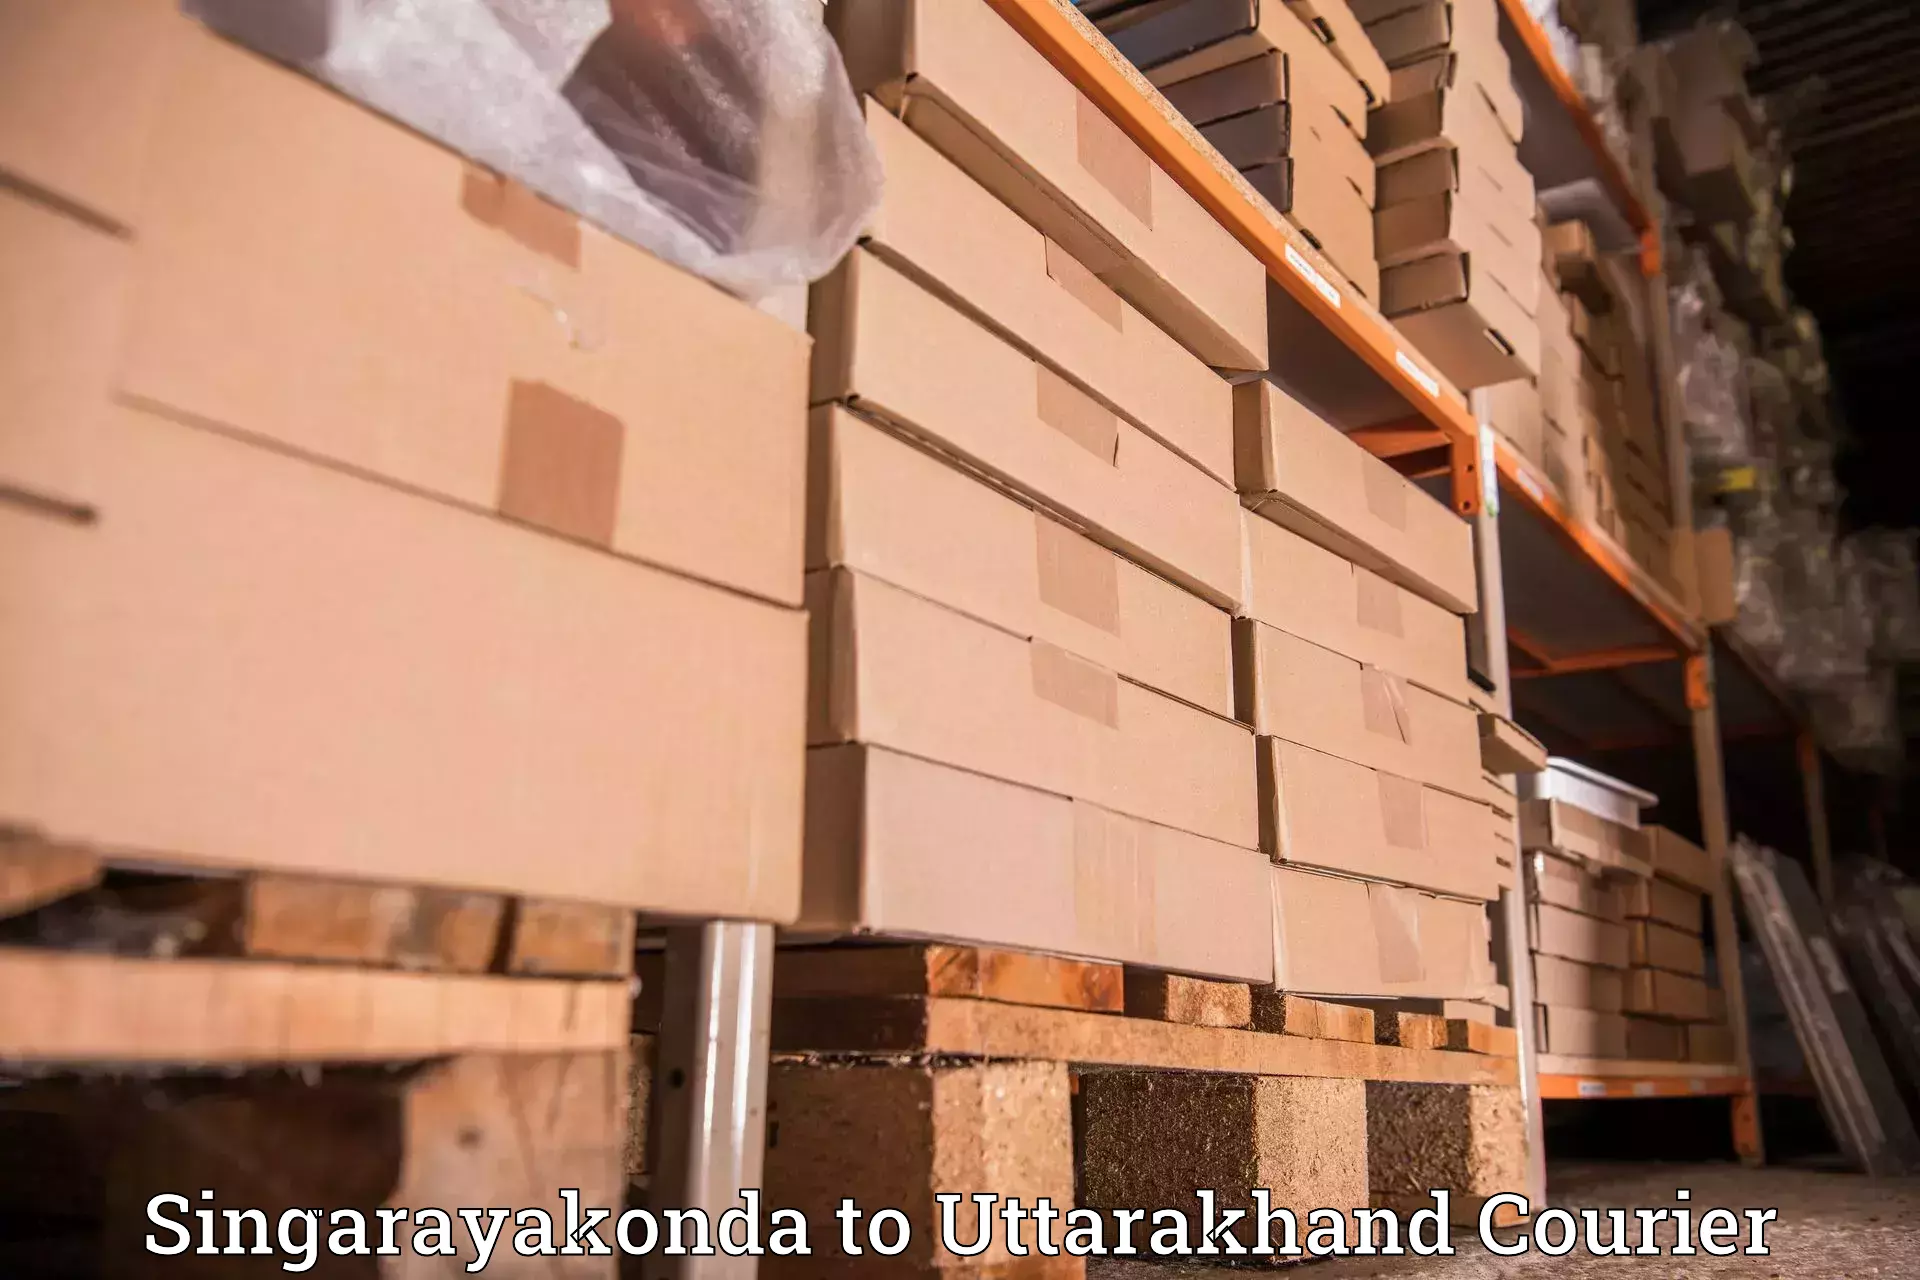 Modern courier technology Singarayakonda to Uttarkashi